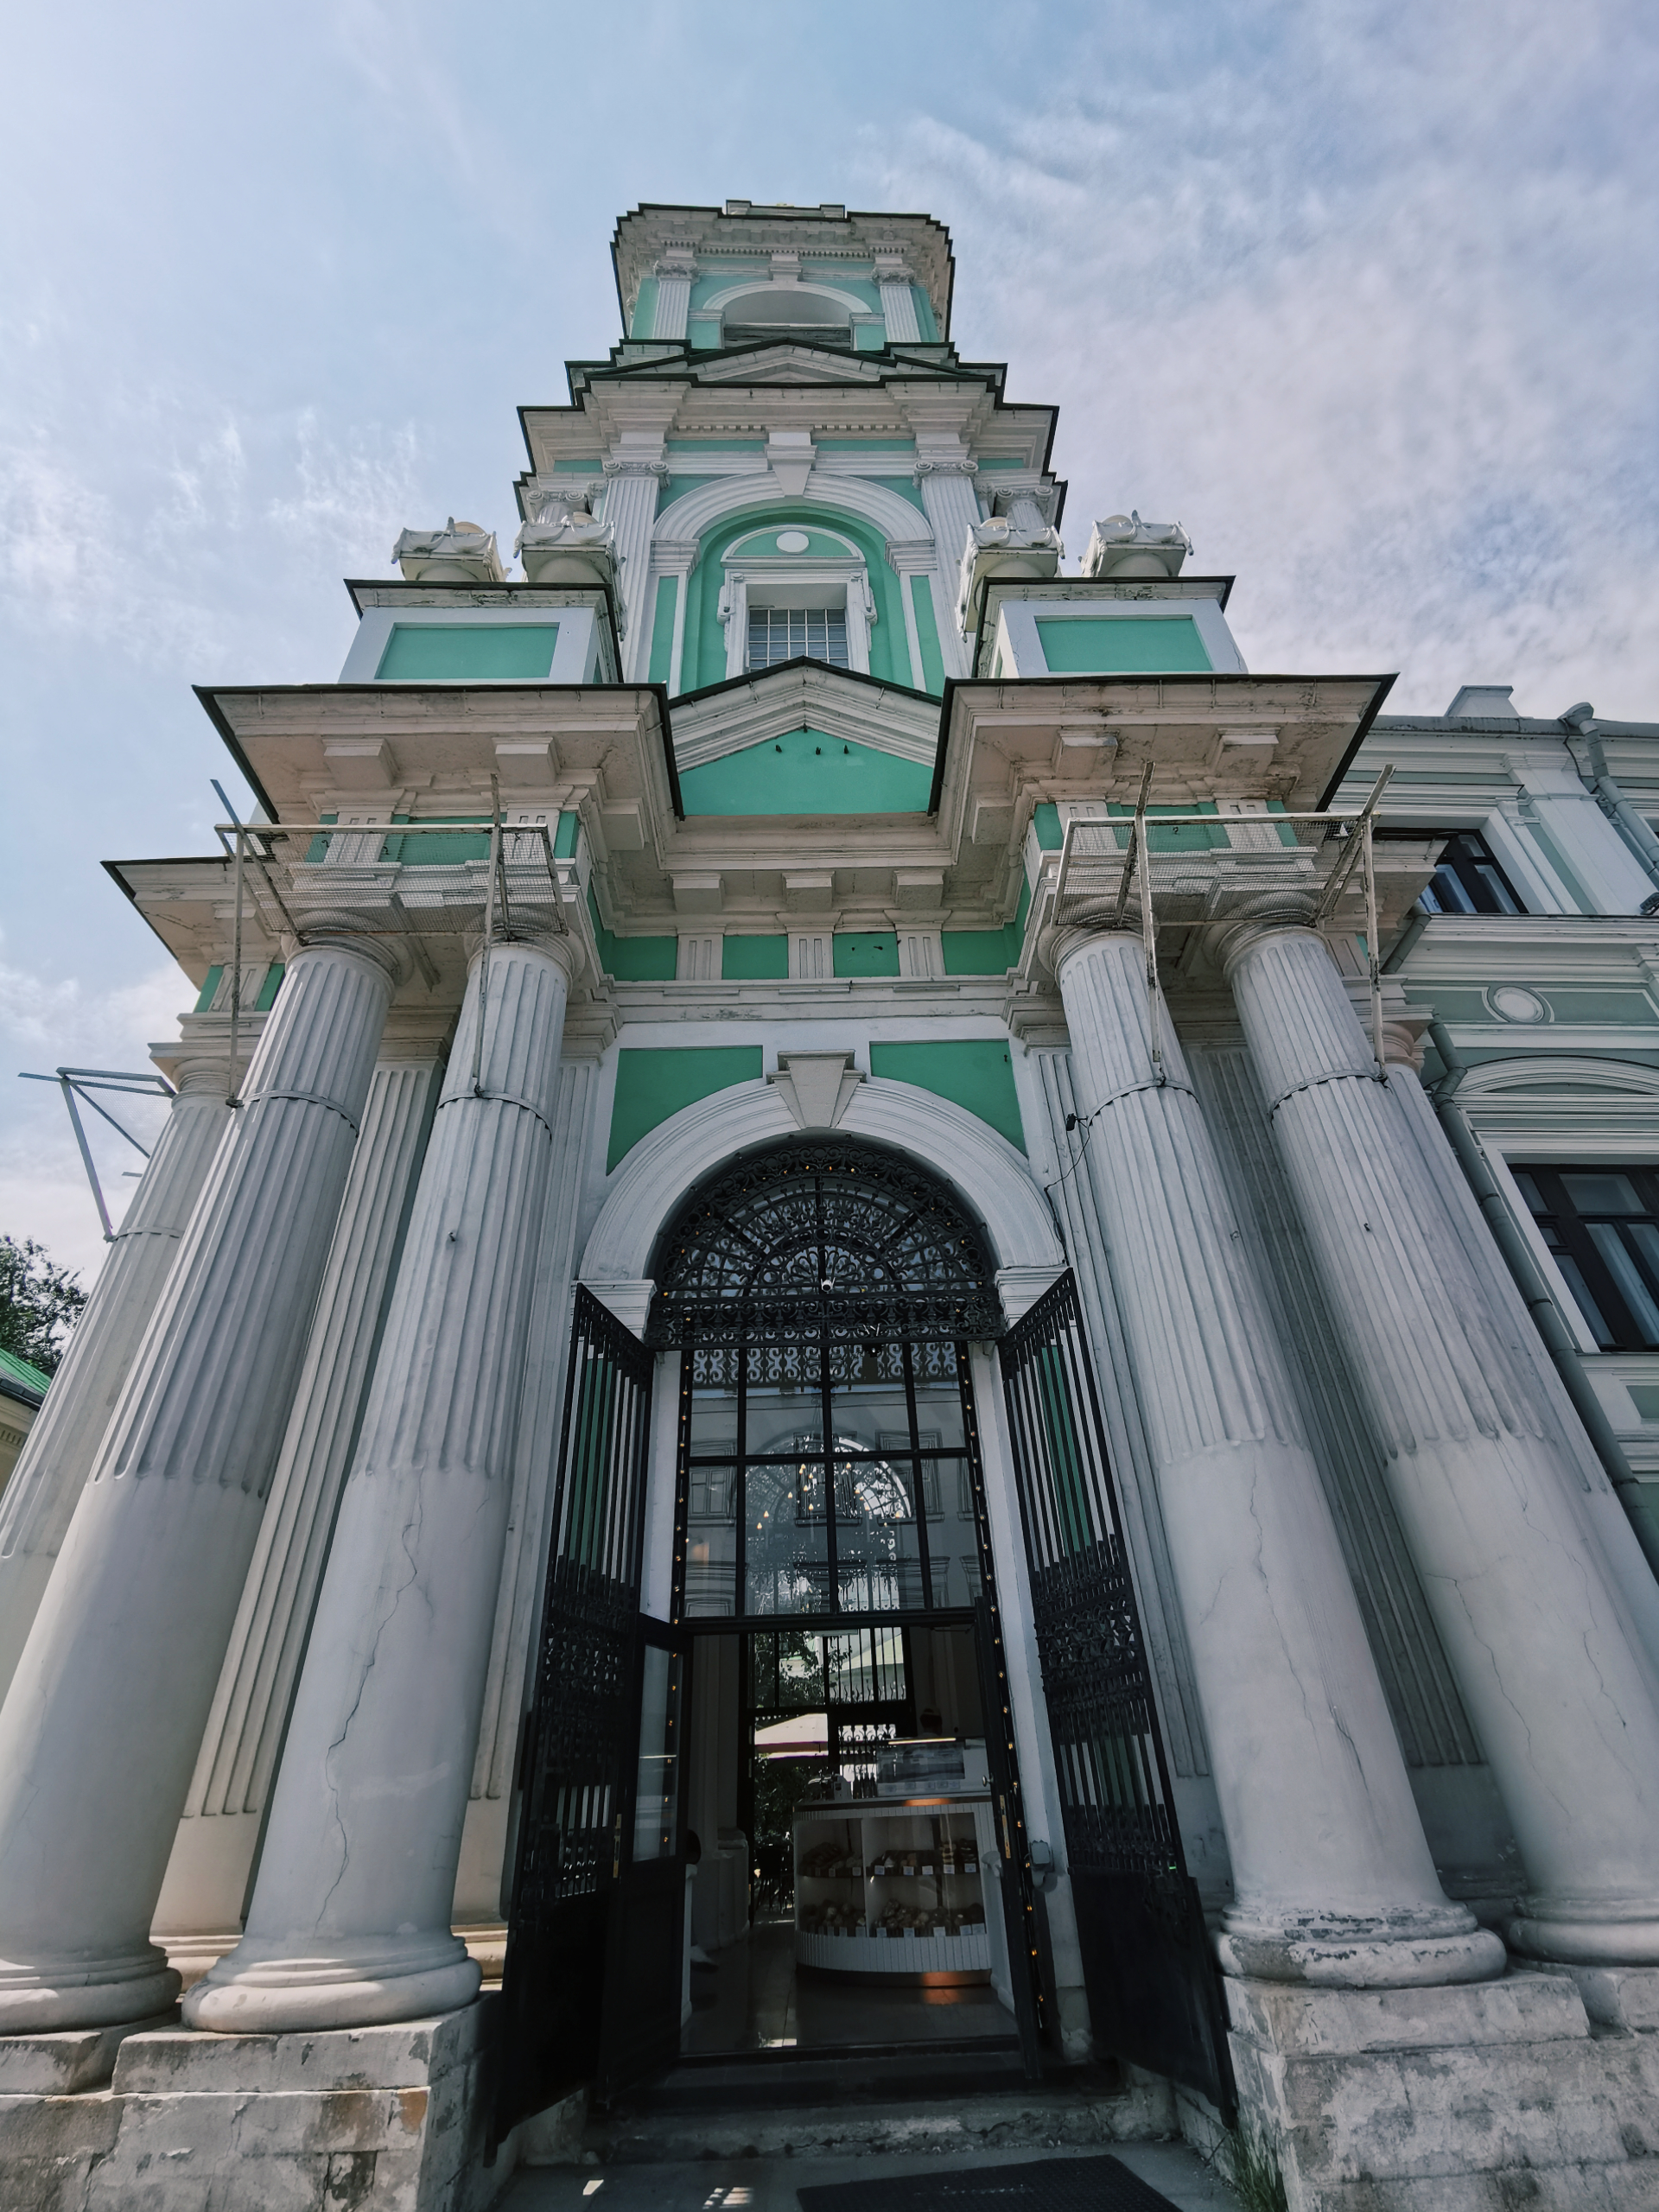 Церковная колокольня и модная кофейня. Как Москва соединяет религию и напитки6